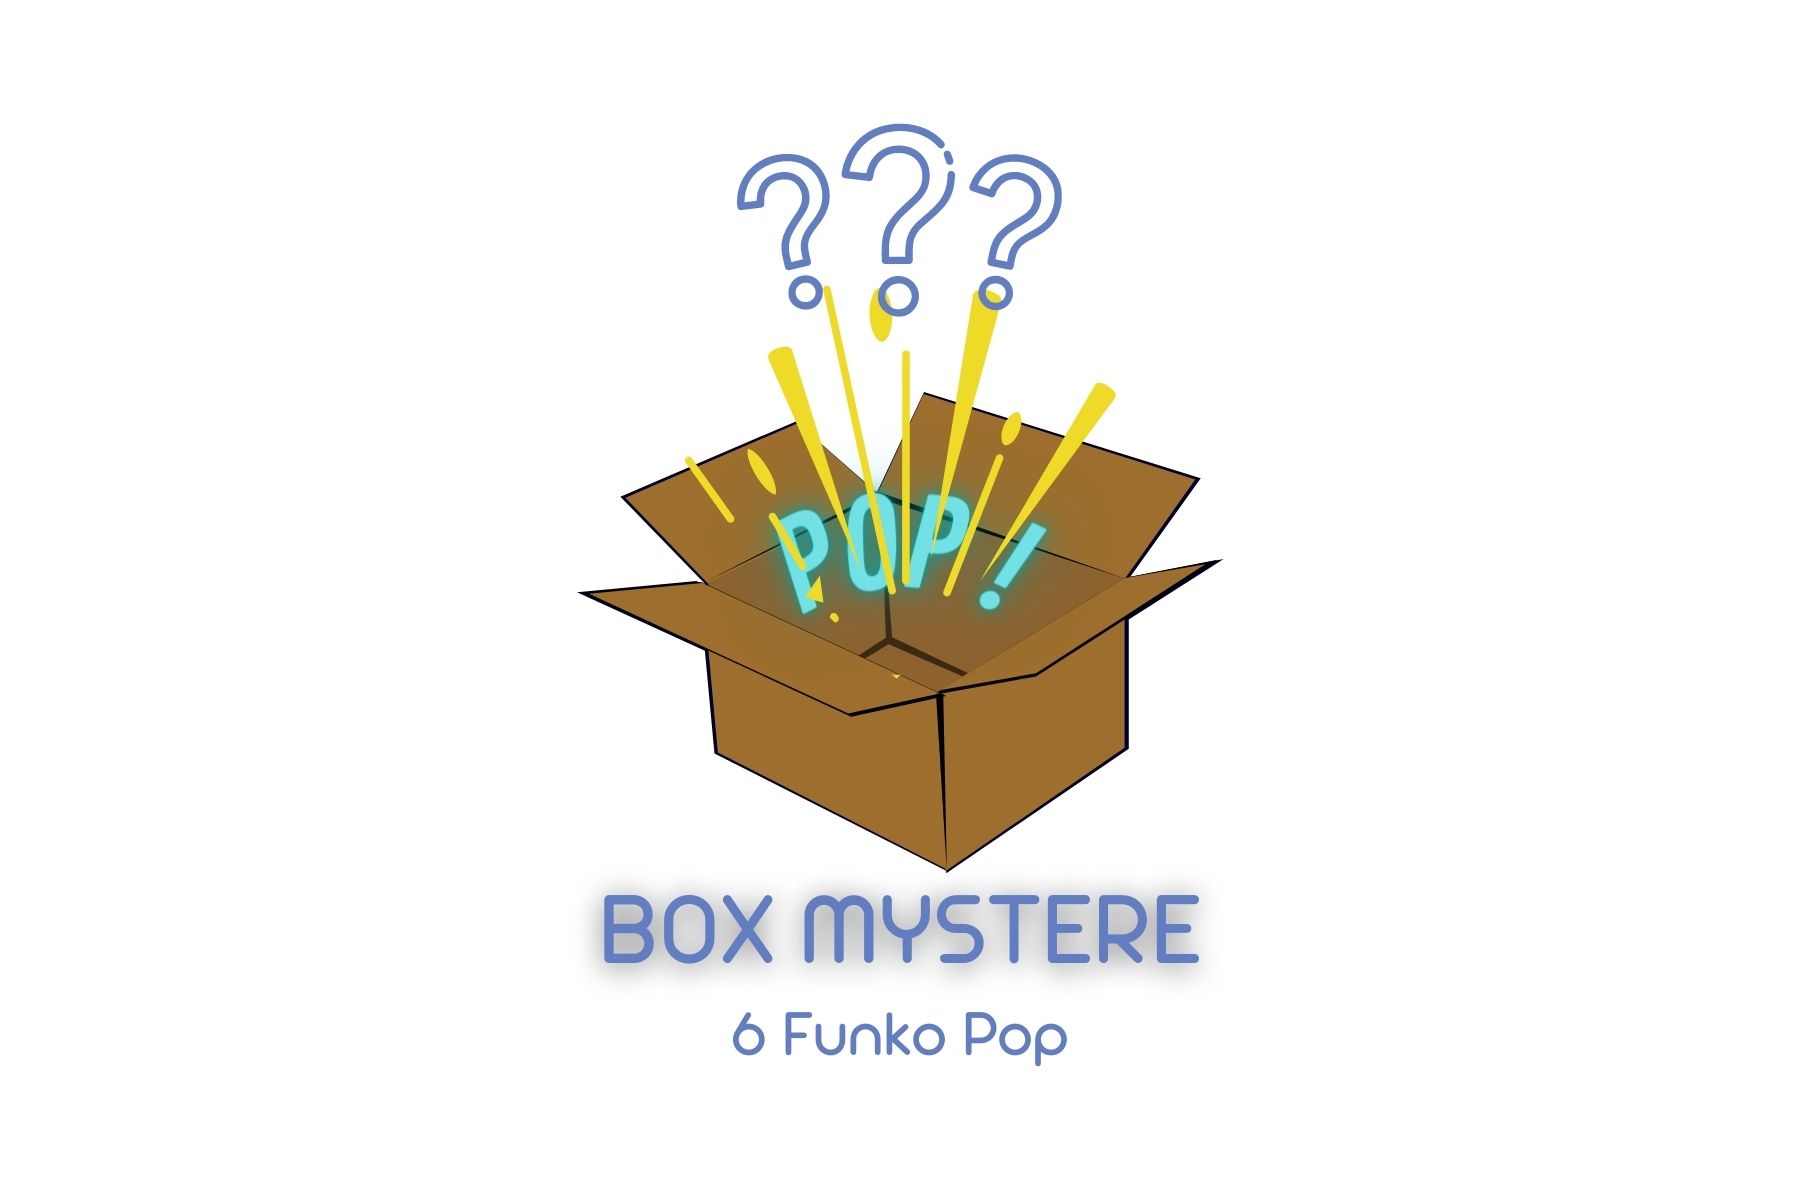 BOX MYSTERE 6 FUNKO POP